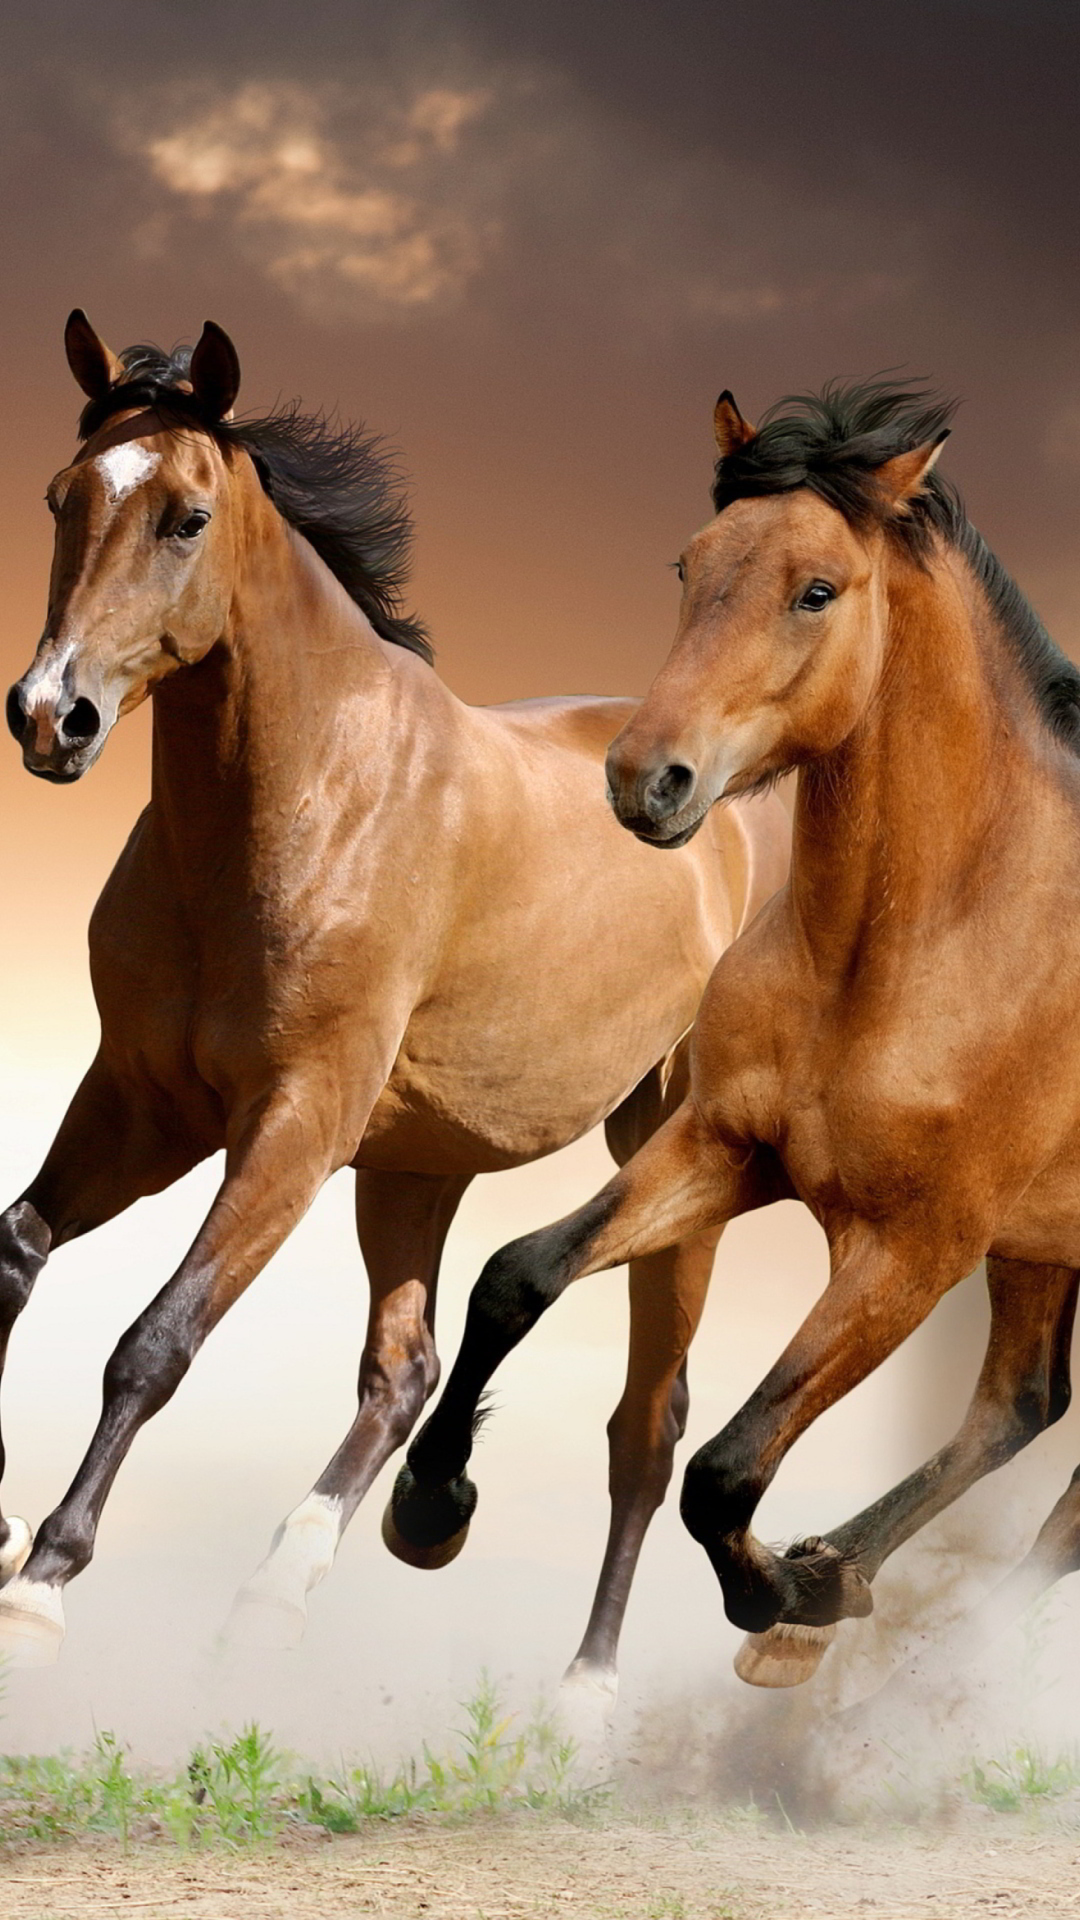 Обои Horse 1080x1920